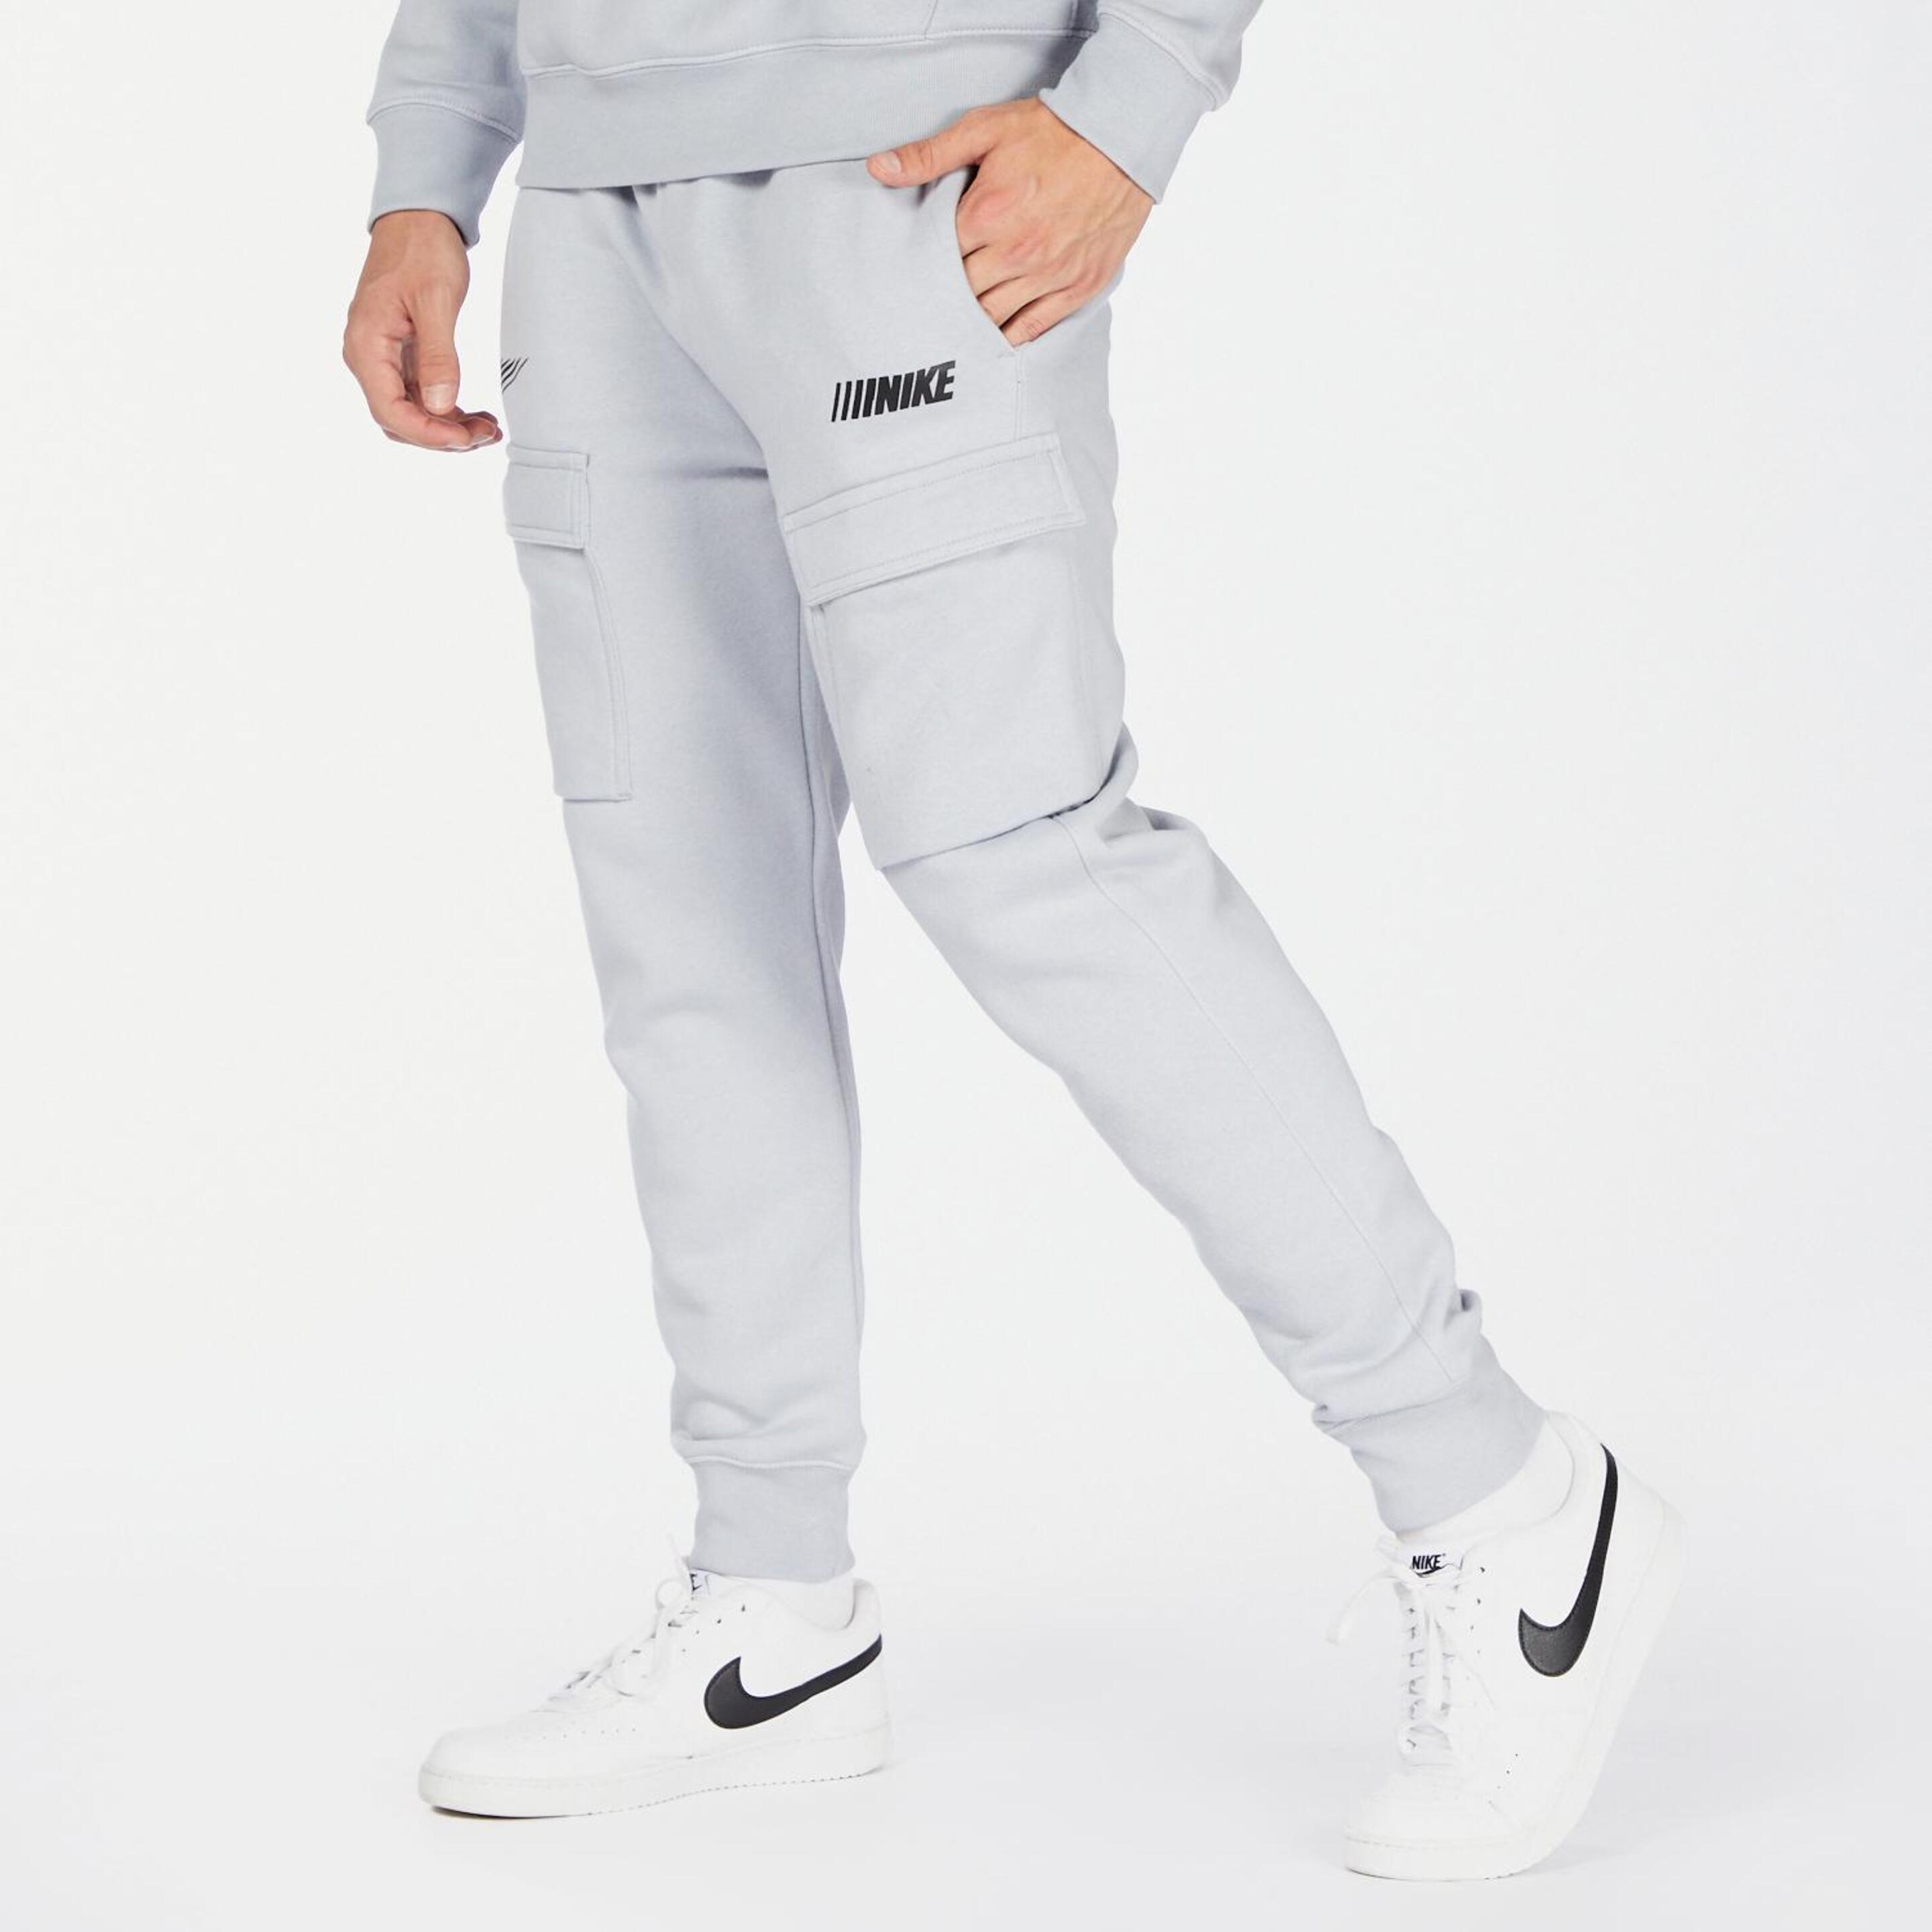 Nike 72 - gris - Pantalón Chándal Hombre